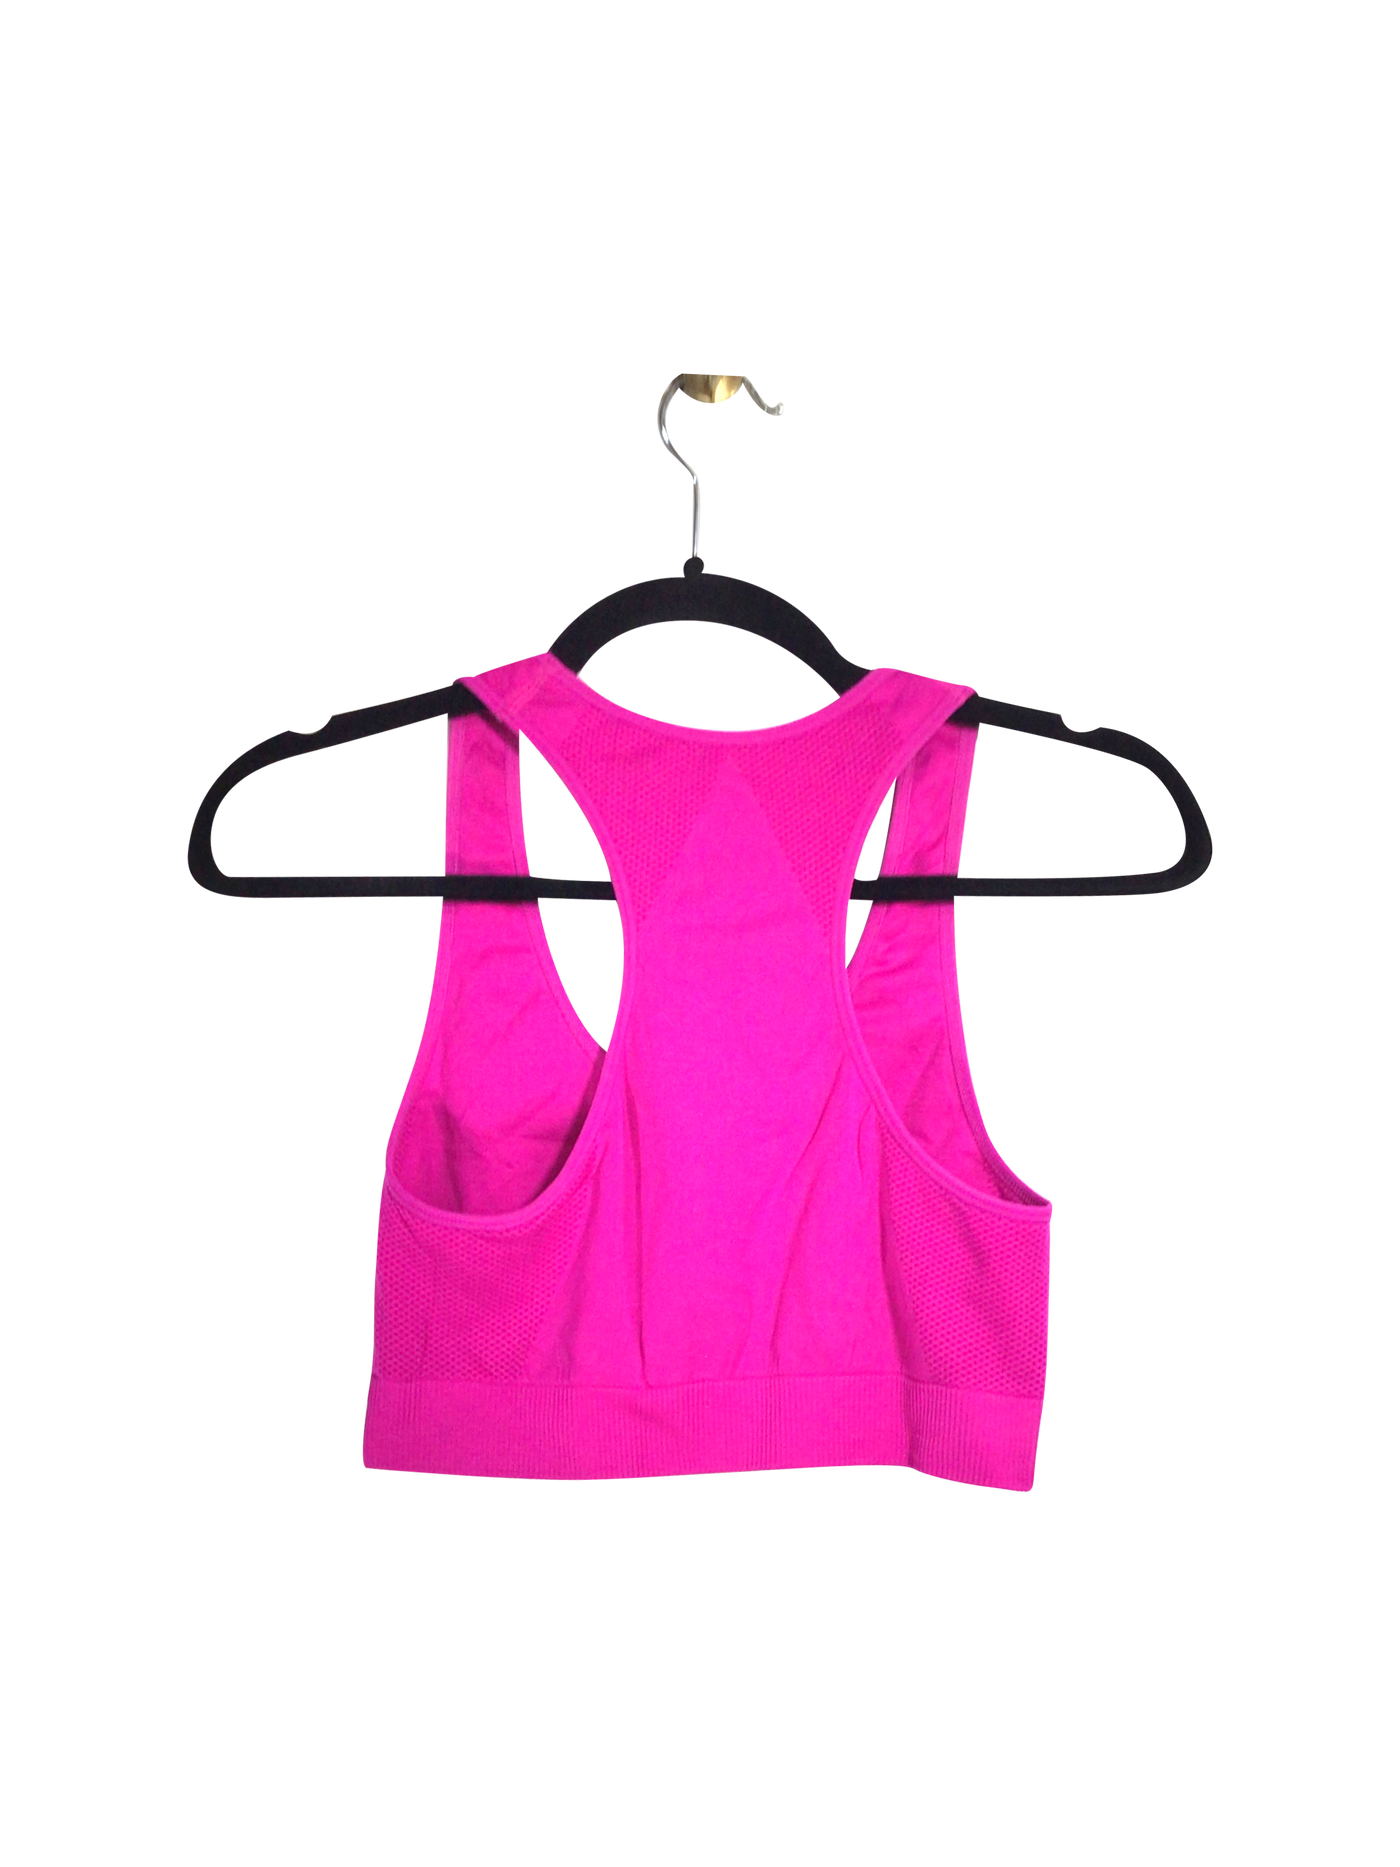 PRO FIT Women Activewear Sports Bras Regular fit in Pink - Size M | 8.44 $ KOOP